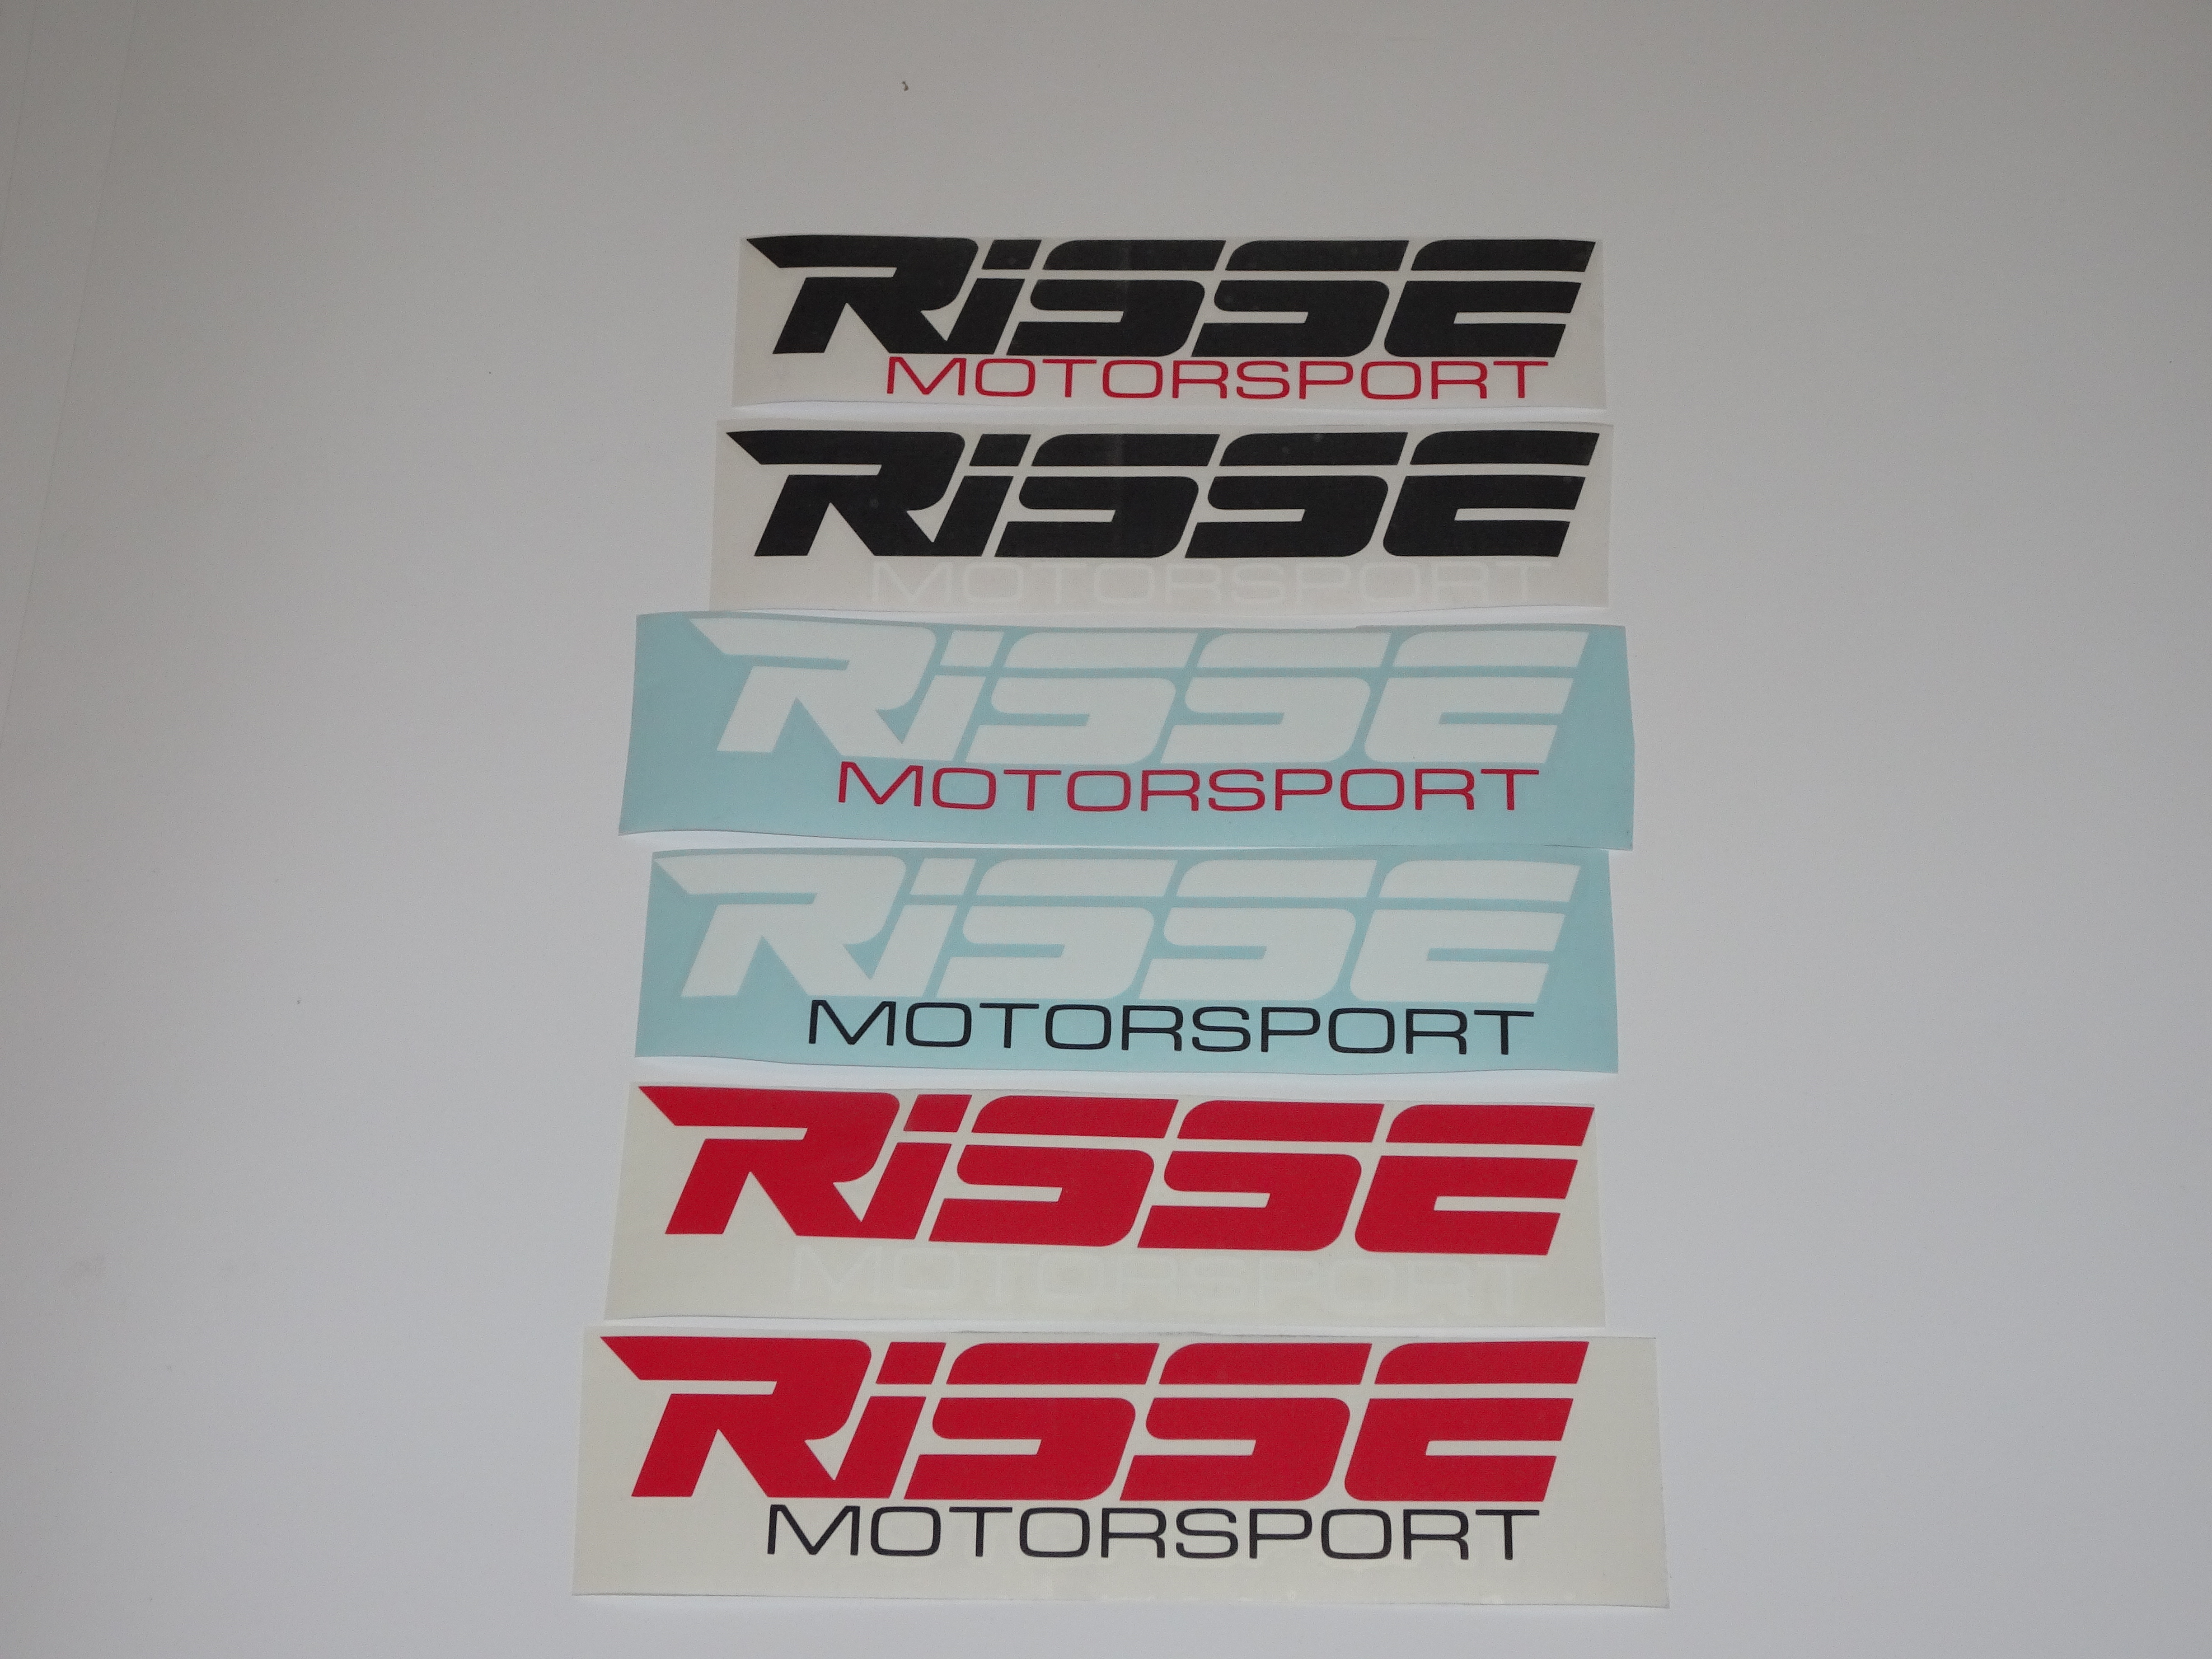 Risse Motorsport: Aktive Erfahrung aus dem Motorsport für Ihren